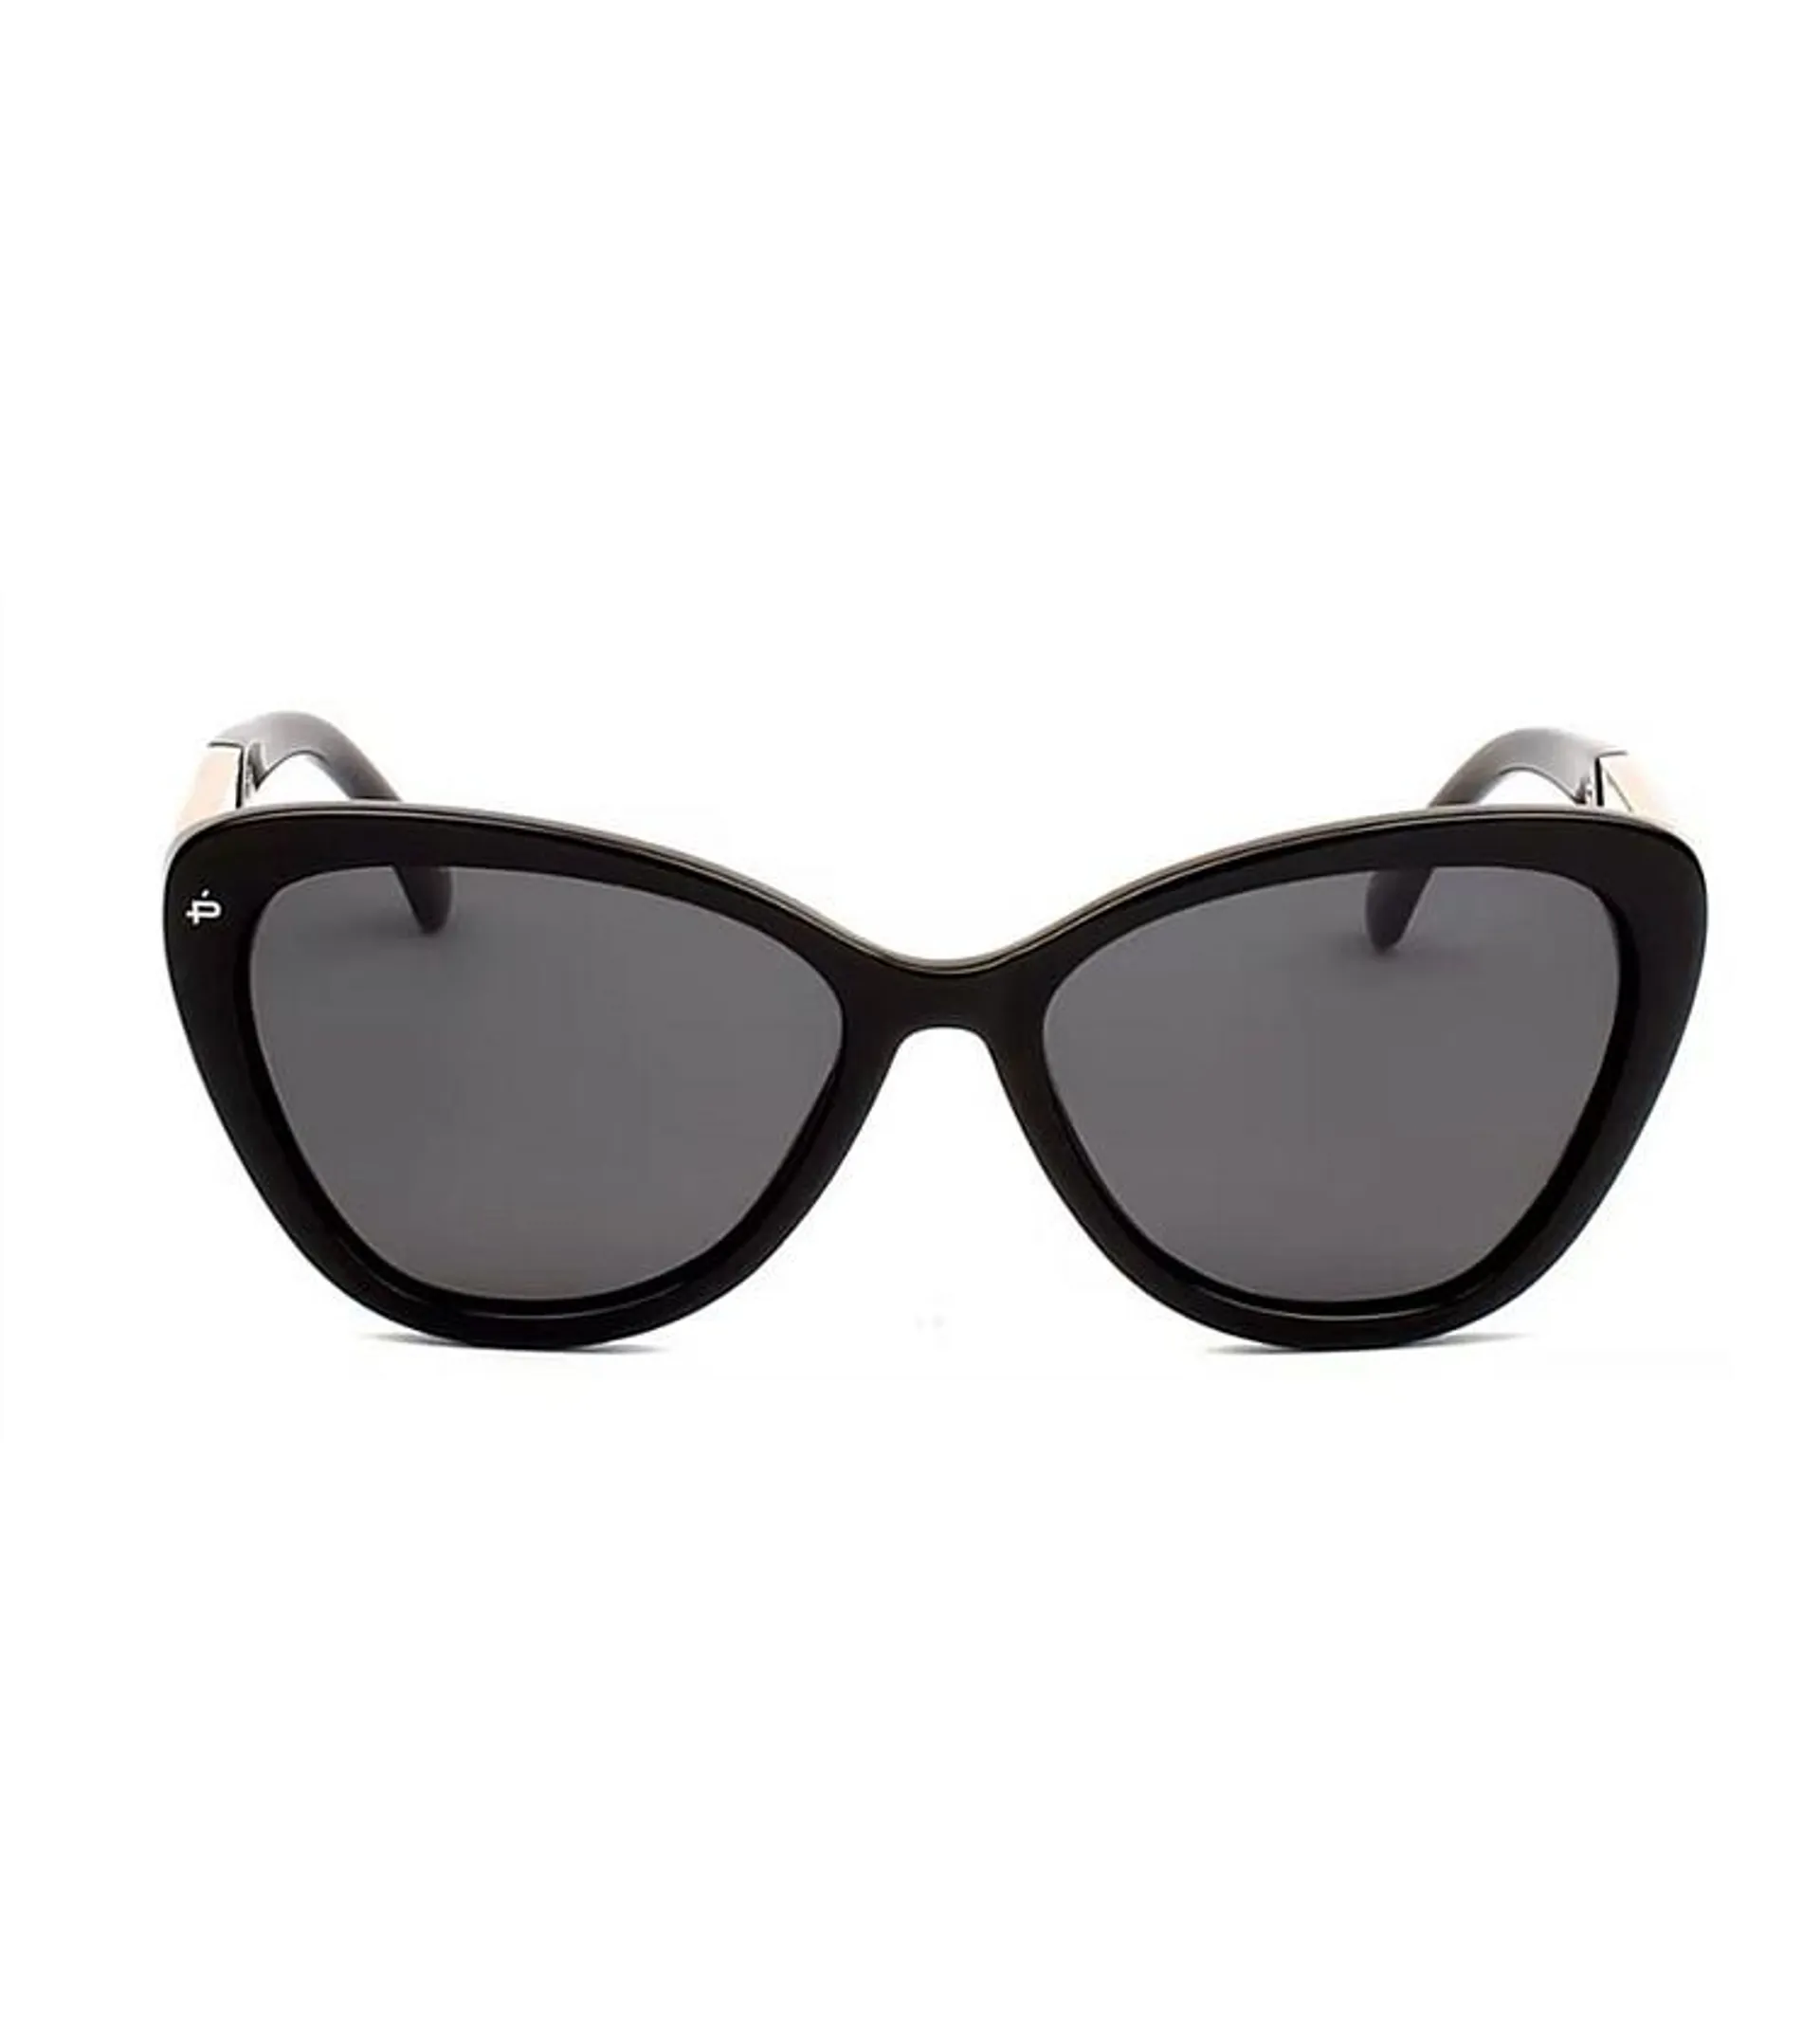 Prive Hepburn Caviar Black Sunglasses